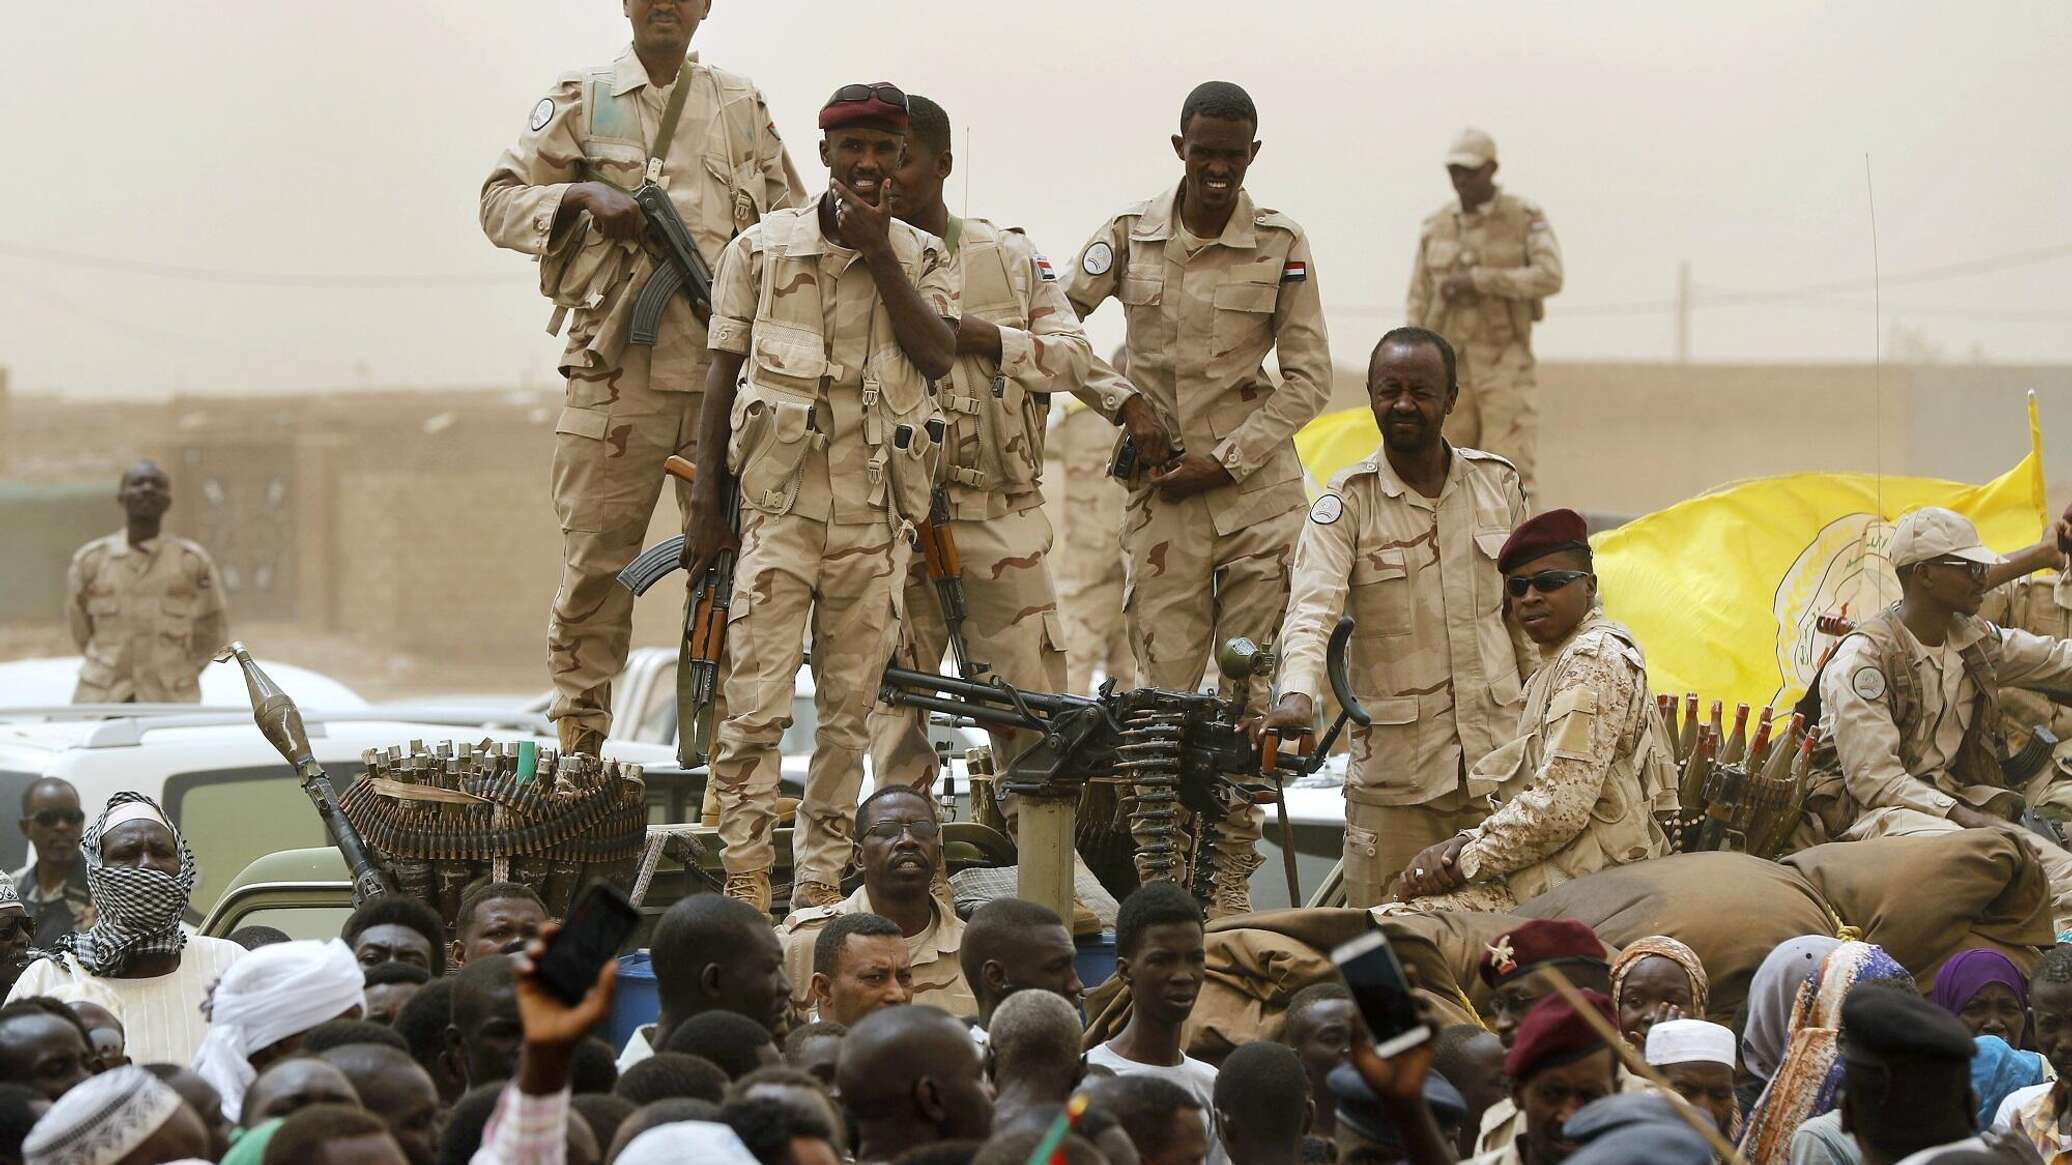 "جيش تحرير السودان" تتهم "الدعم السريع" بالسعي لترسيم دولة جديدة